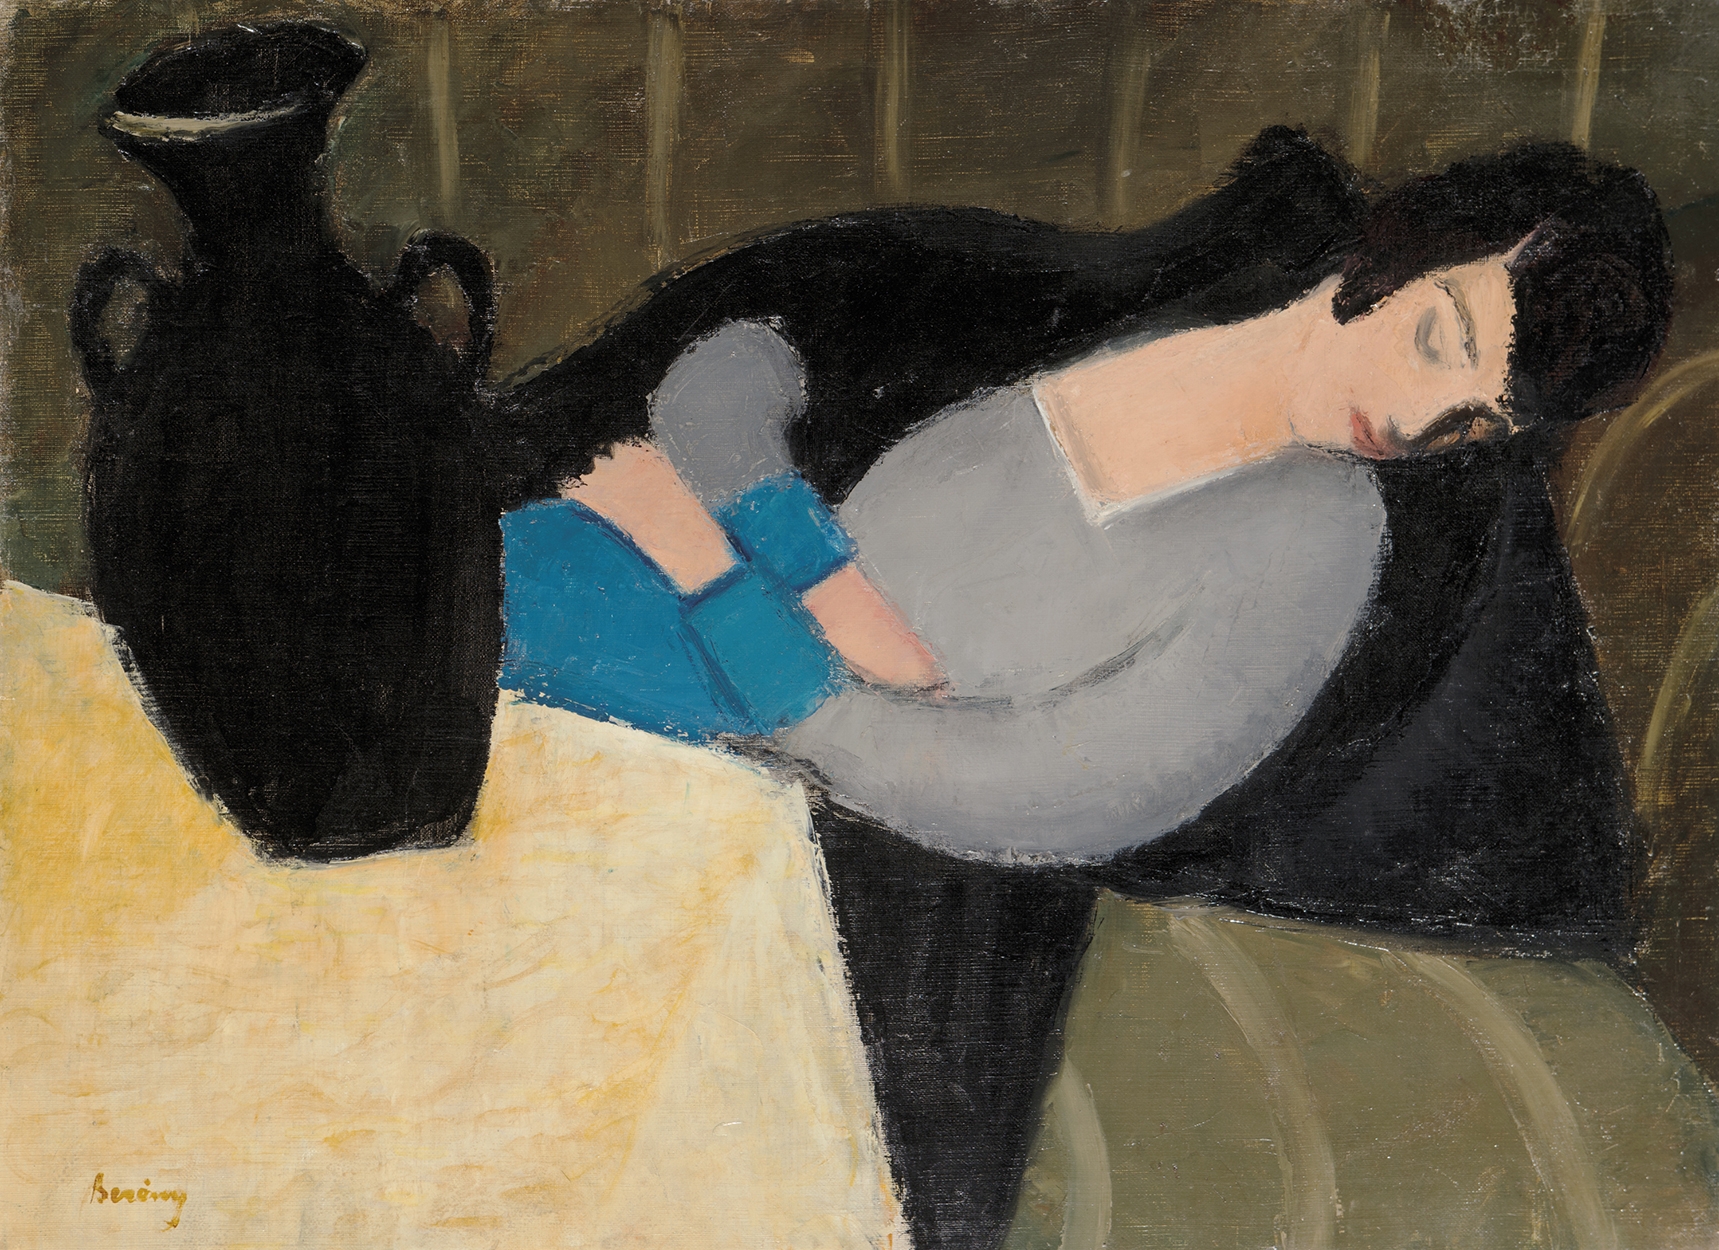 Berény Róbert (1887-1953) Sleeping Woman with Black Vase, 1927-28